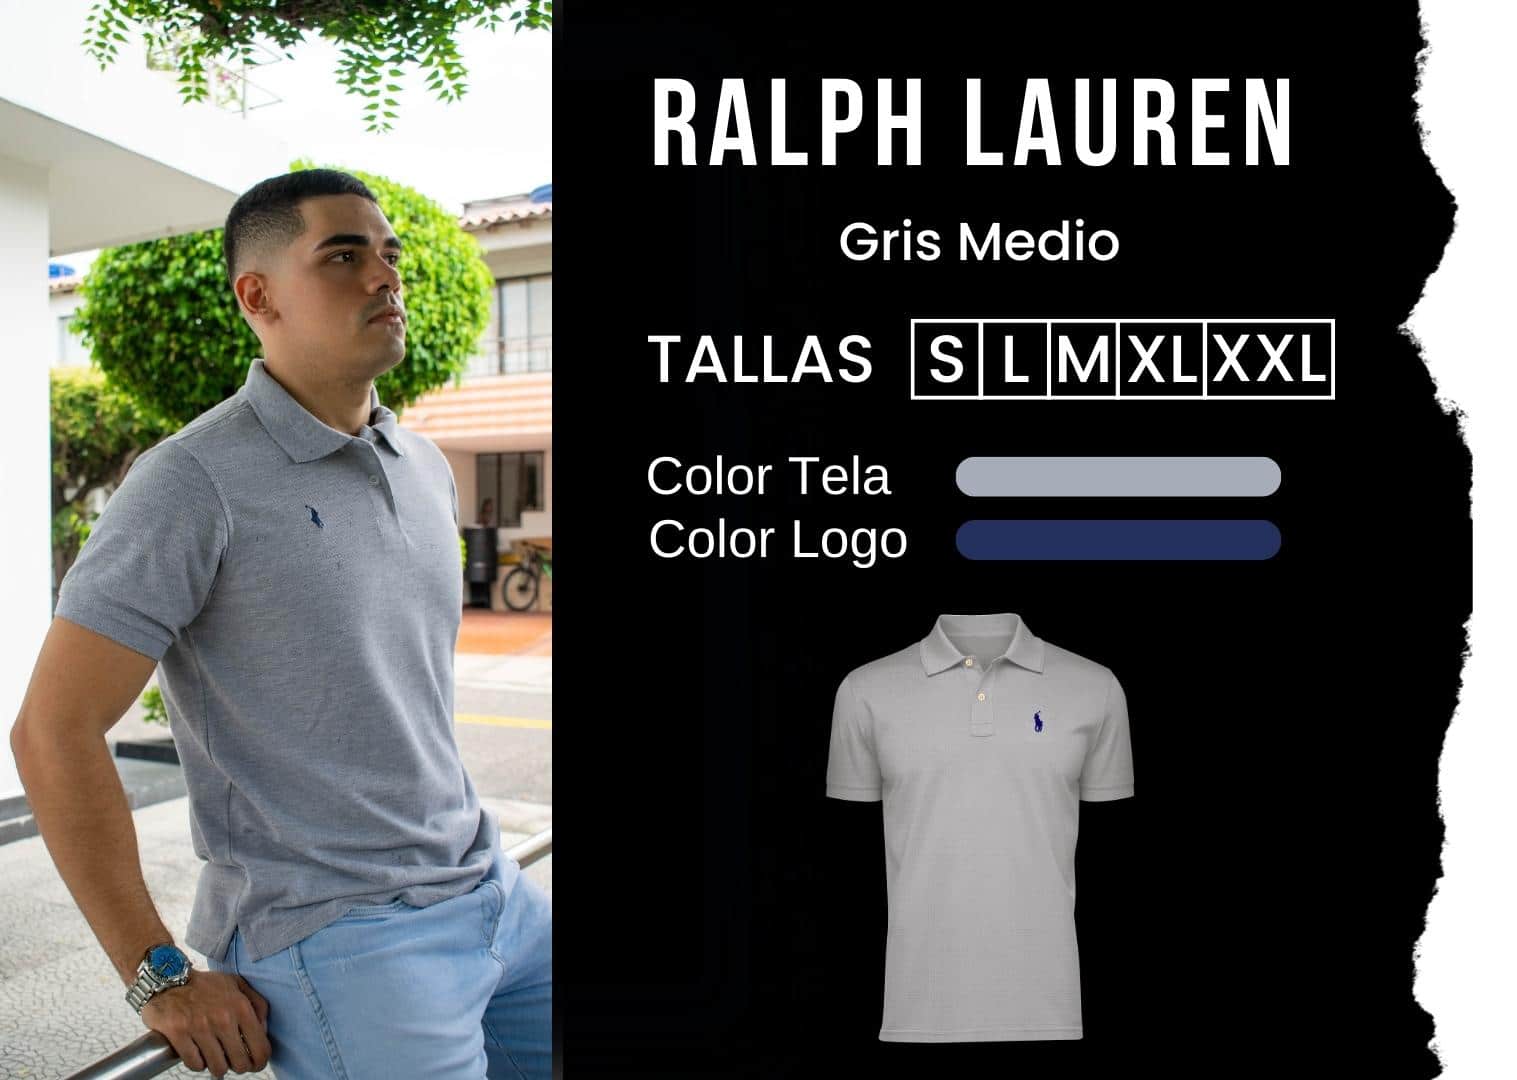 camiseta Ralph Lauren polo hombre tienda olevan color gris medio